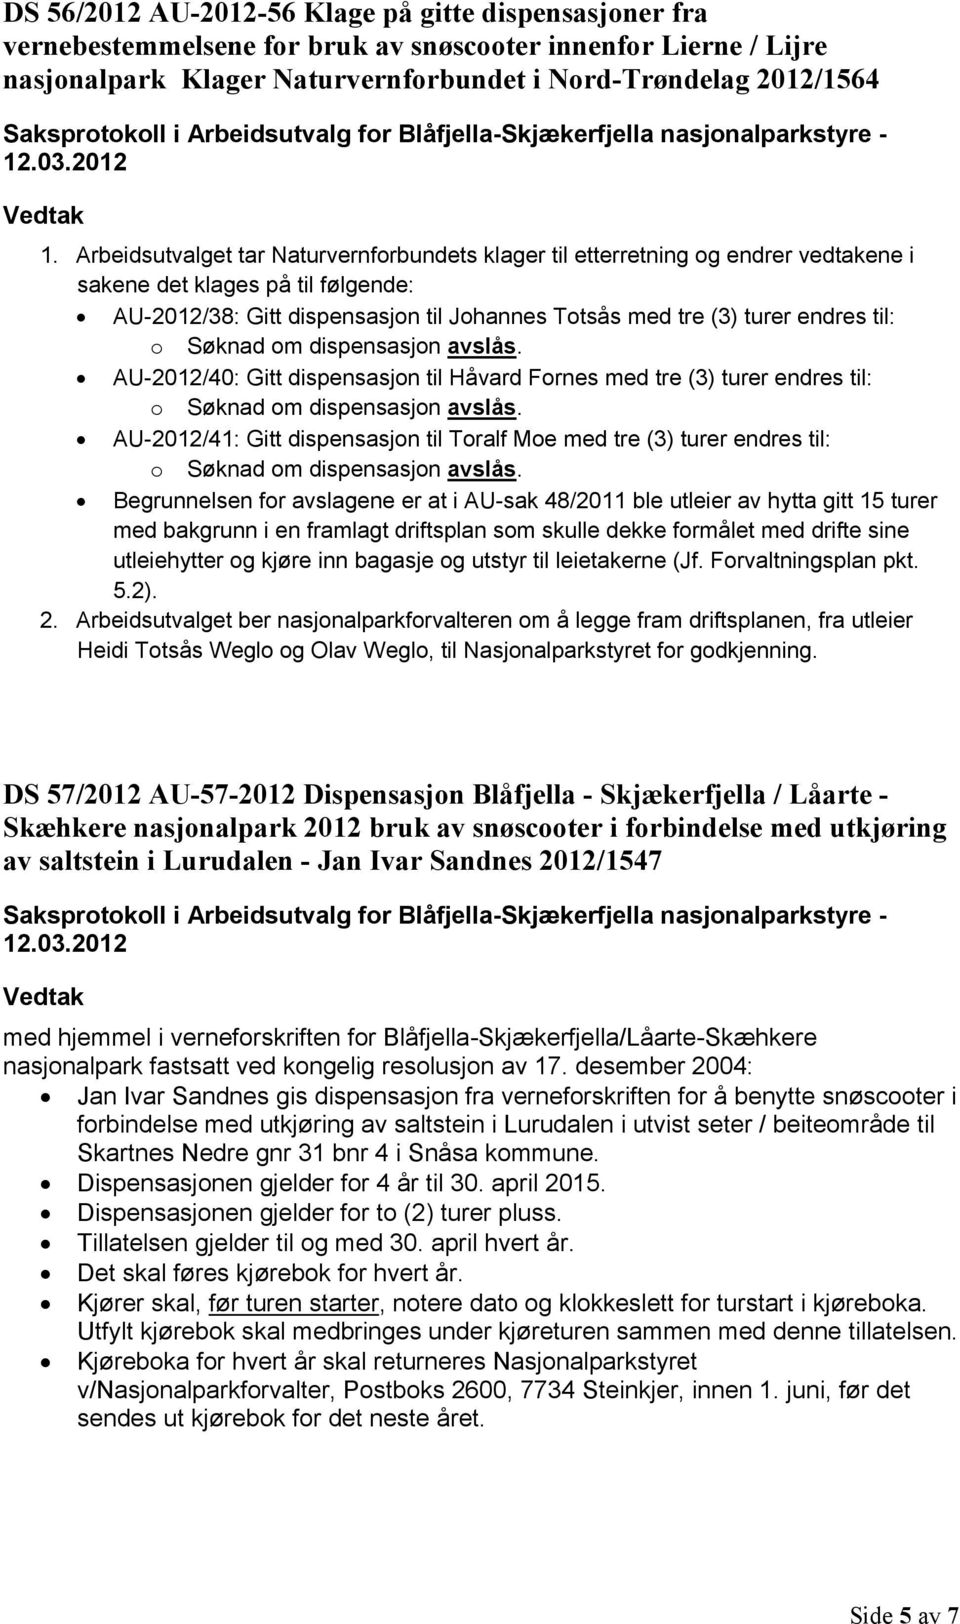 til: o Søknad om dispensasjon avslås. AU-2012/40: Gitt dispensasjon til Håvard Fornes med tre (3) turer endres til: o Søknad om dispensasjon avslås.